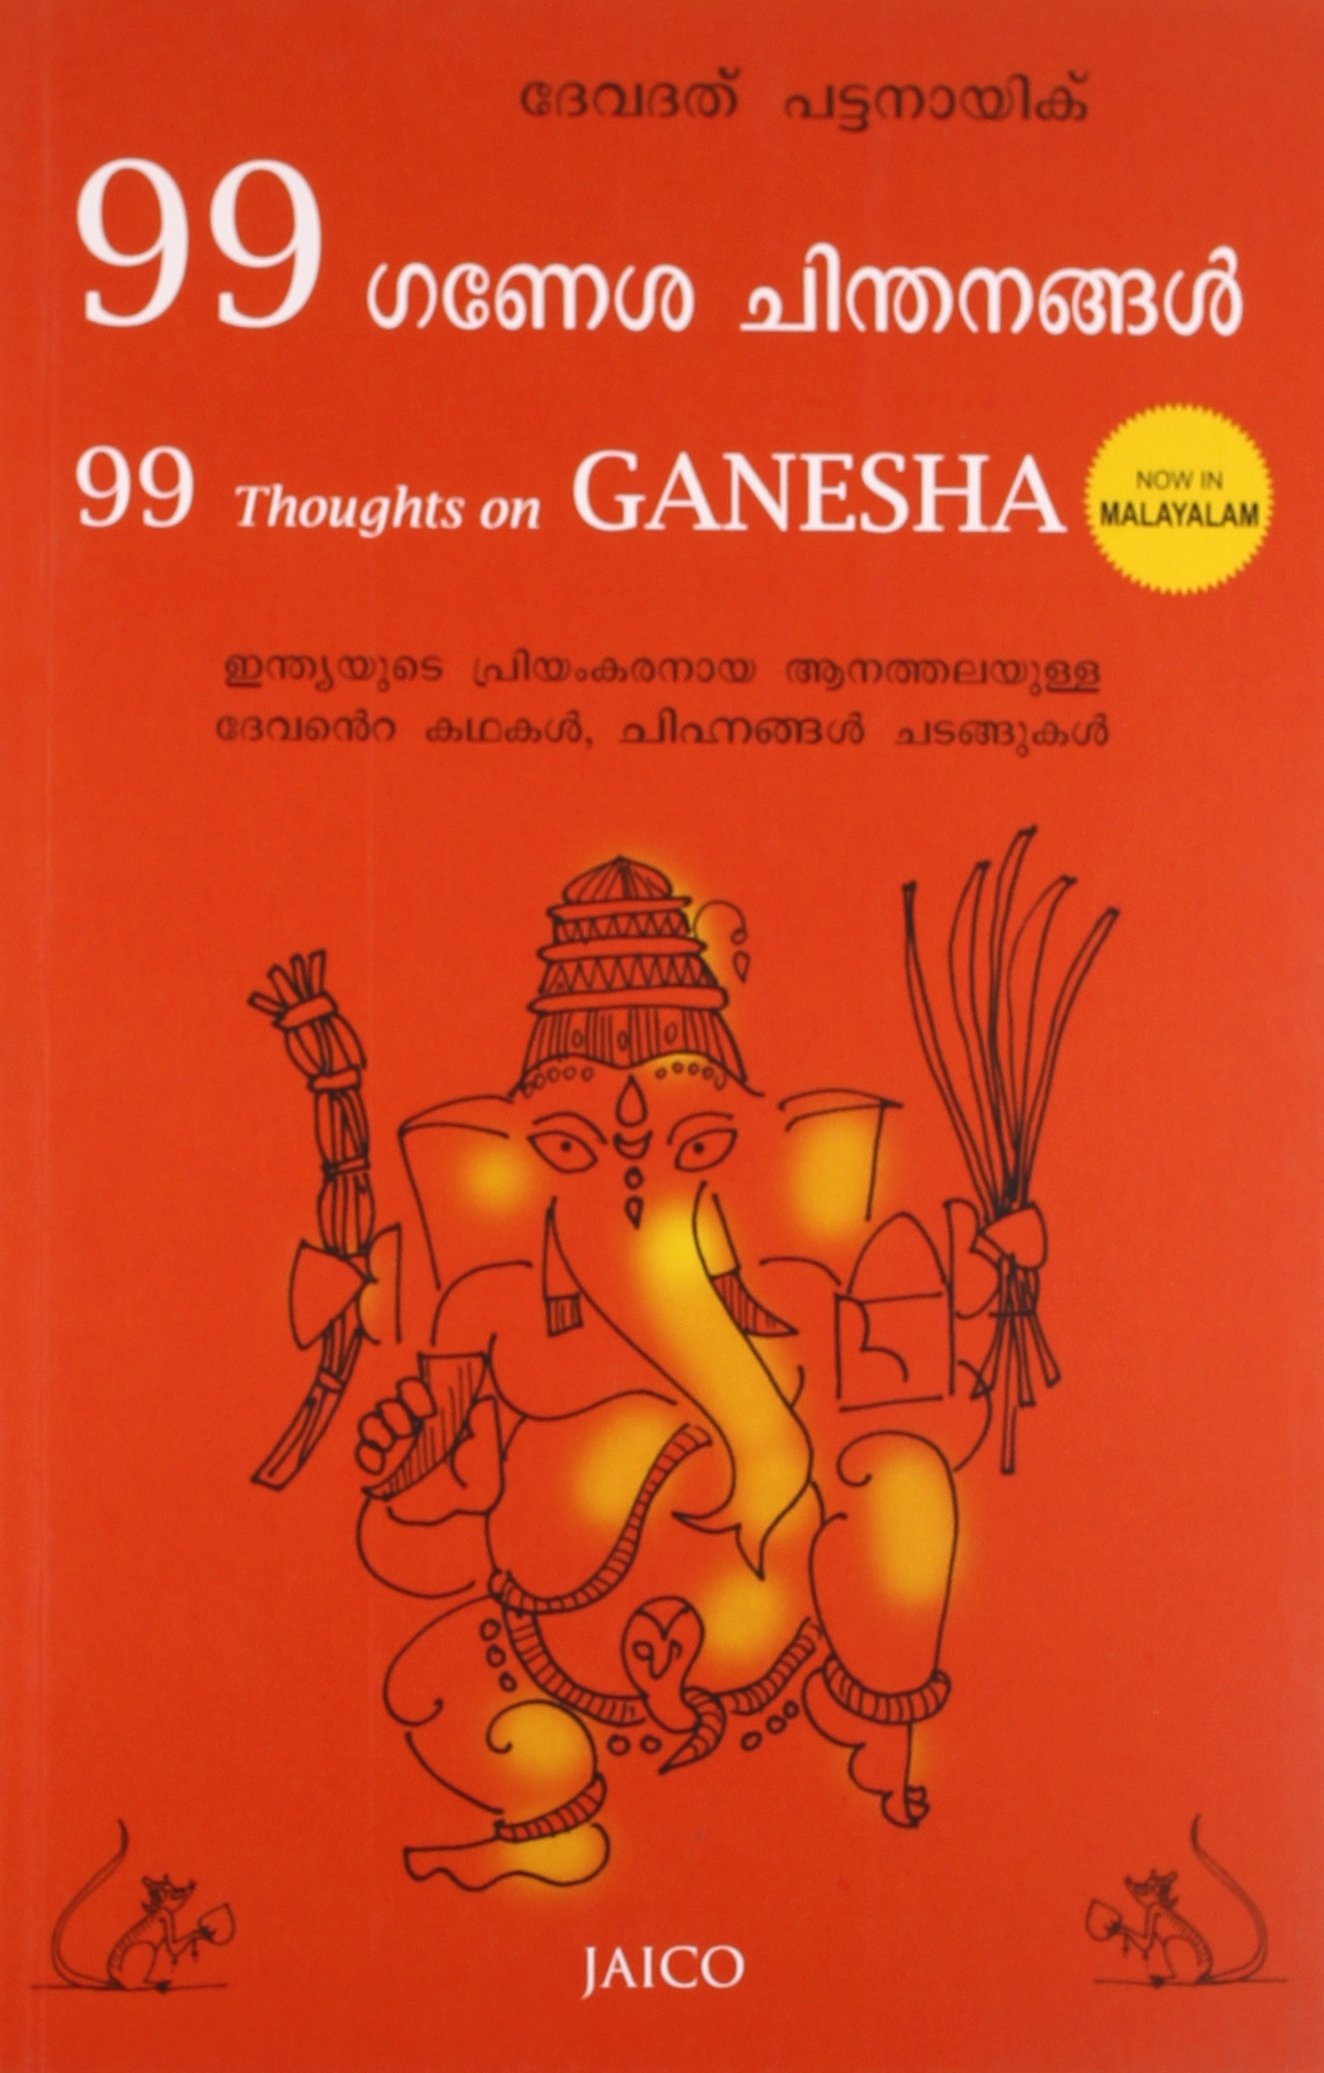 99 Thoughts on Ganesha (99 ഗണപതിയെക്കുറിച്ചുള്ള ചിന്തകൾ)